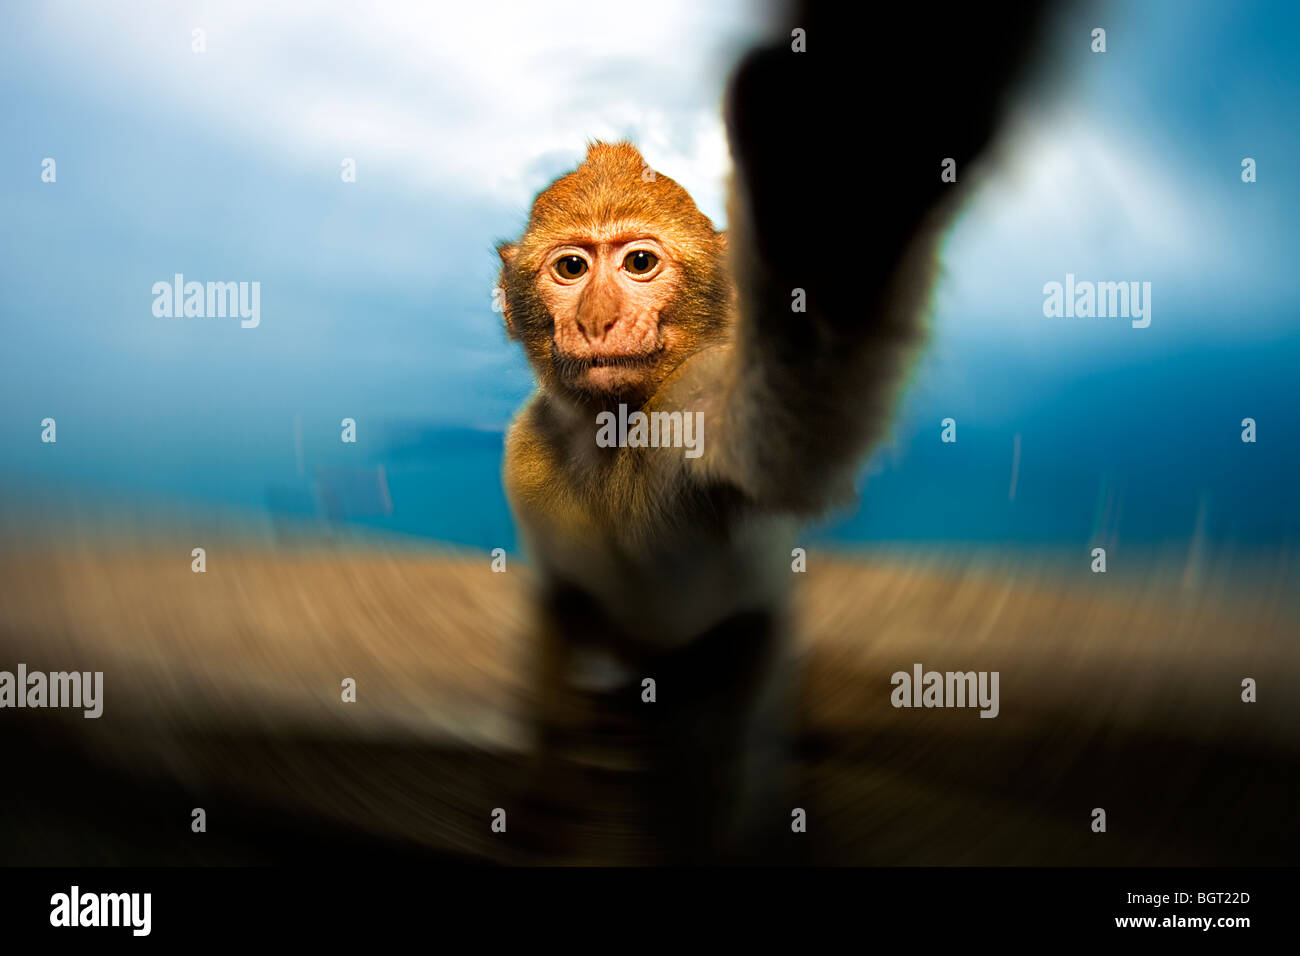 Baby monkey reaching (Macaca sylvanus), Rock of Gibraltar, UK Stock Photo